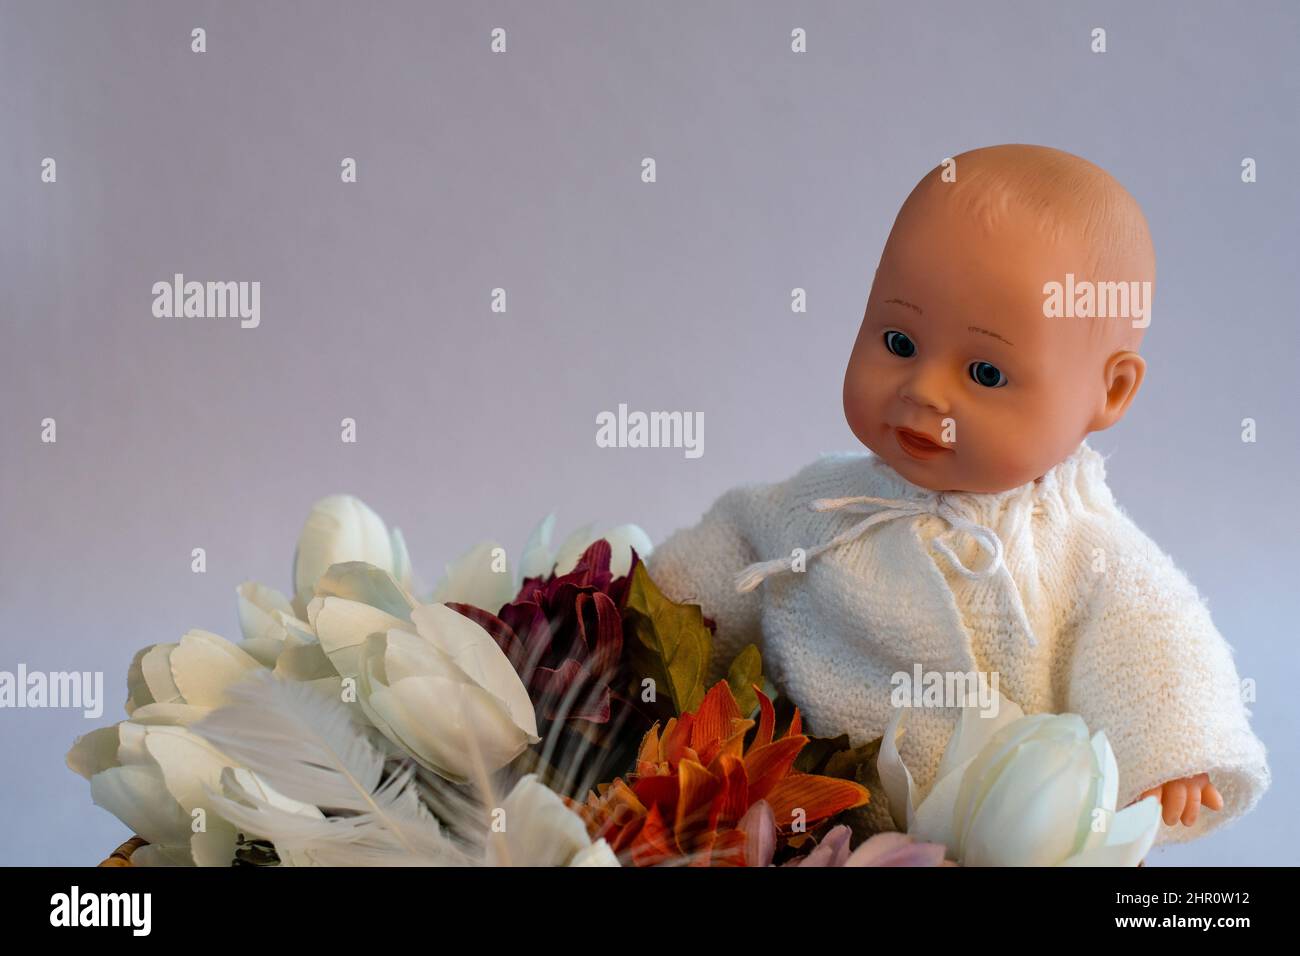 Baby Doll still life Stock Photo